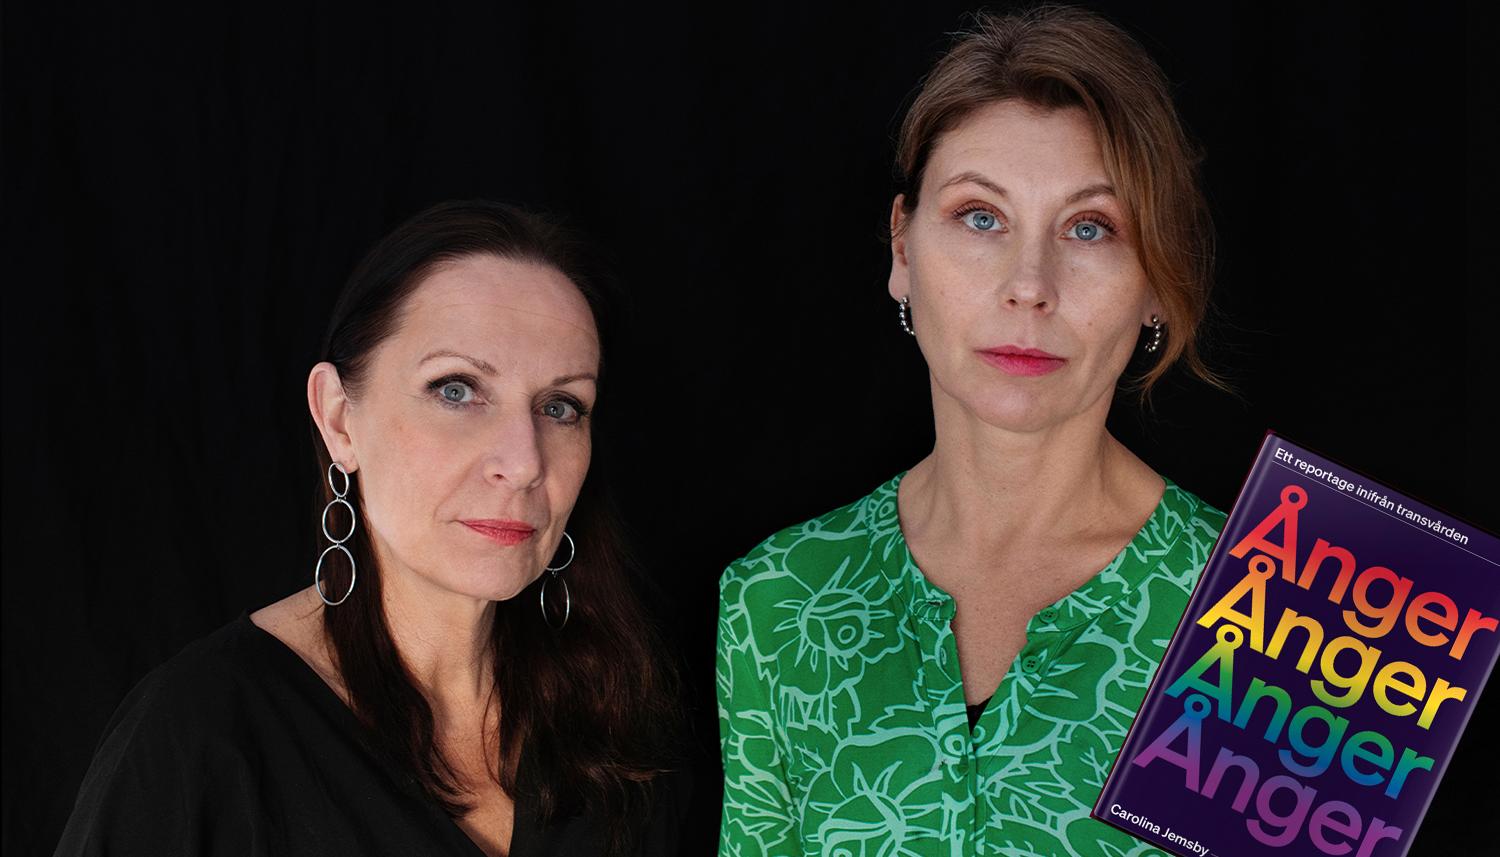 Journalisterna Karin Mattisson och Carolina Jemsby har tillsammans gjort en tredelad granskning av transvården för unga för ”Uppdrag granskning”. I boken ”Ånger” lägger de fram sina slutsatser.